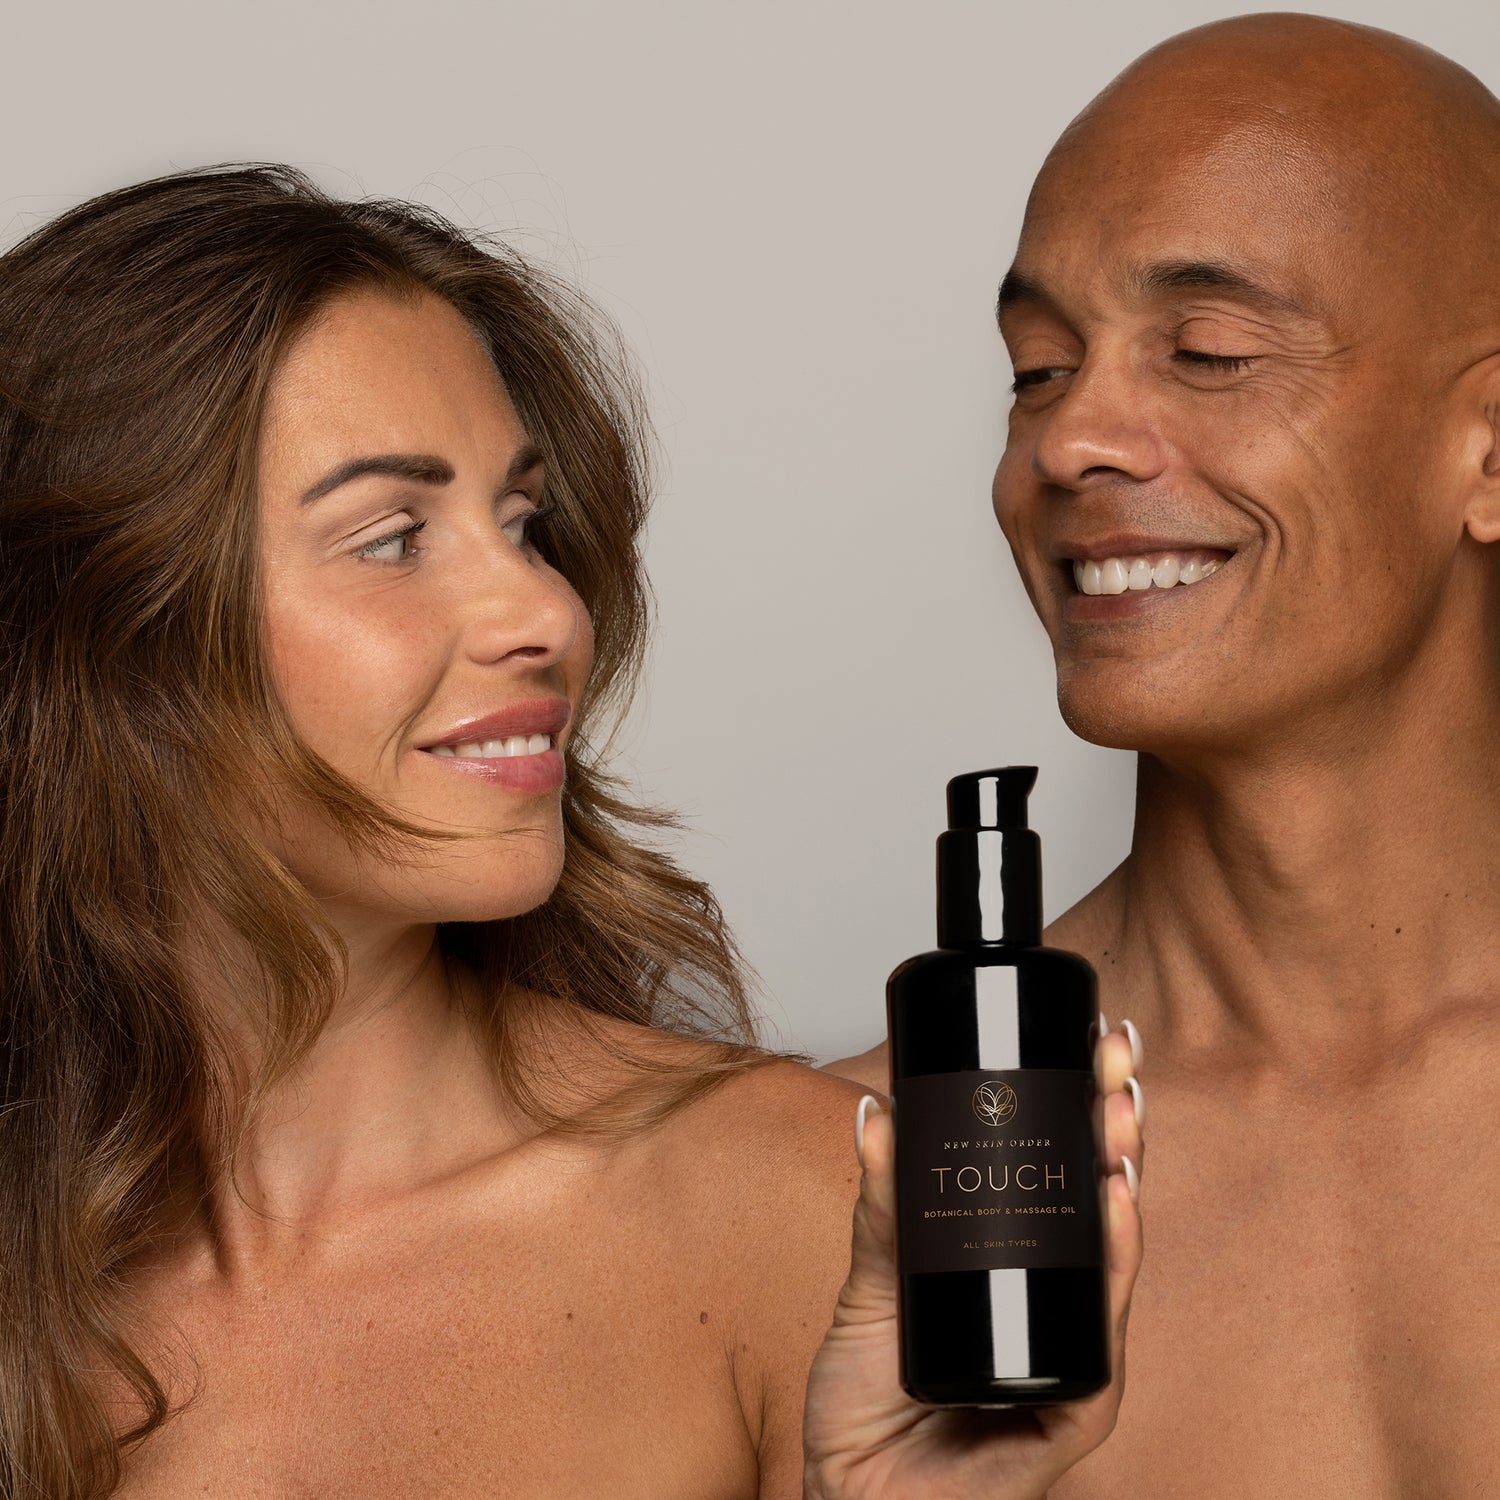  natuurlijke huidverzorgingslijn met 100% plantaardige ingrediënten, voor een gezonde, stralende huid voor mannen en vrouwen."